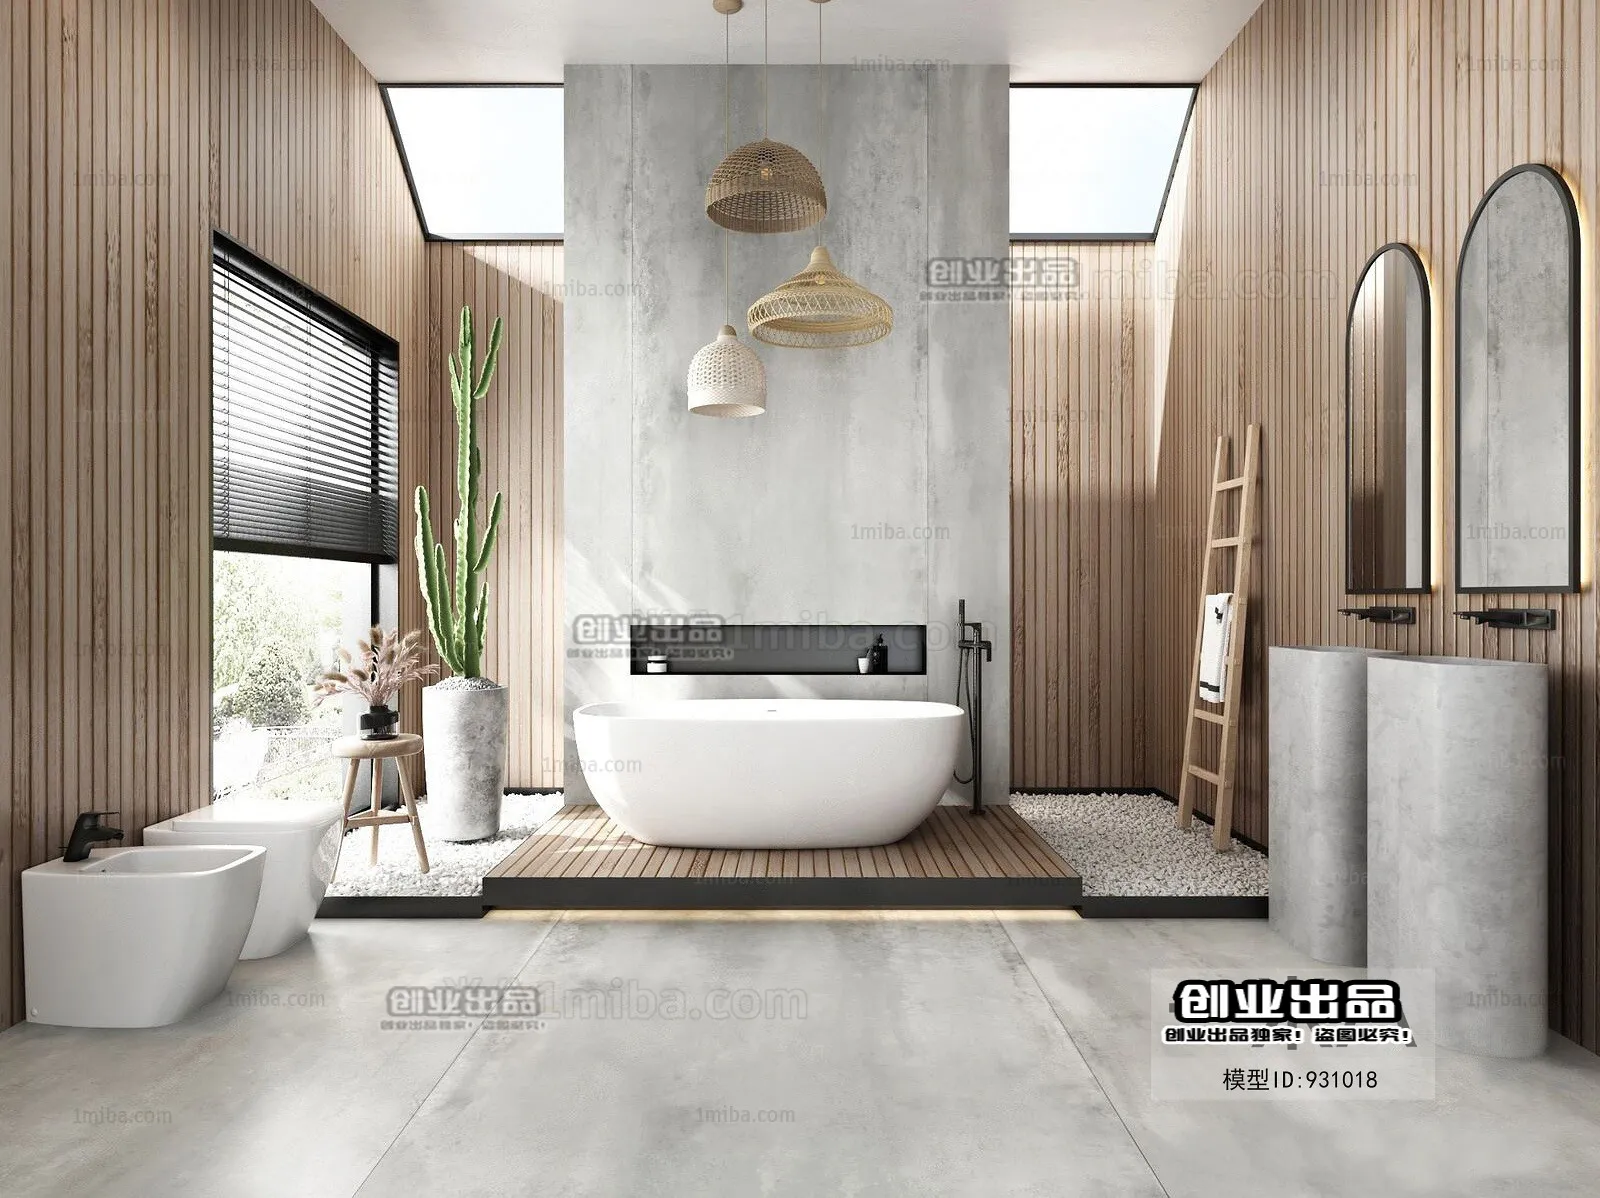 Bathroom – Scandinavian architecture – 015